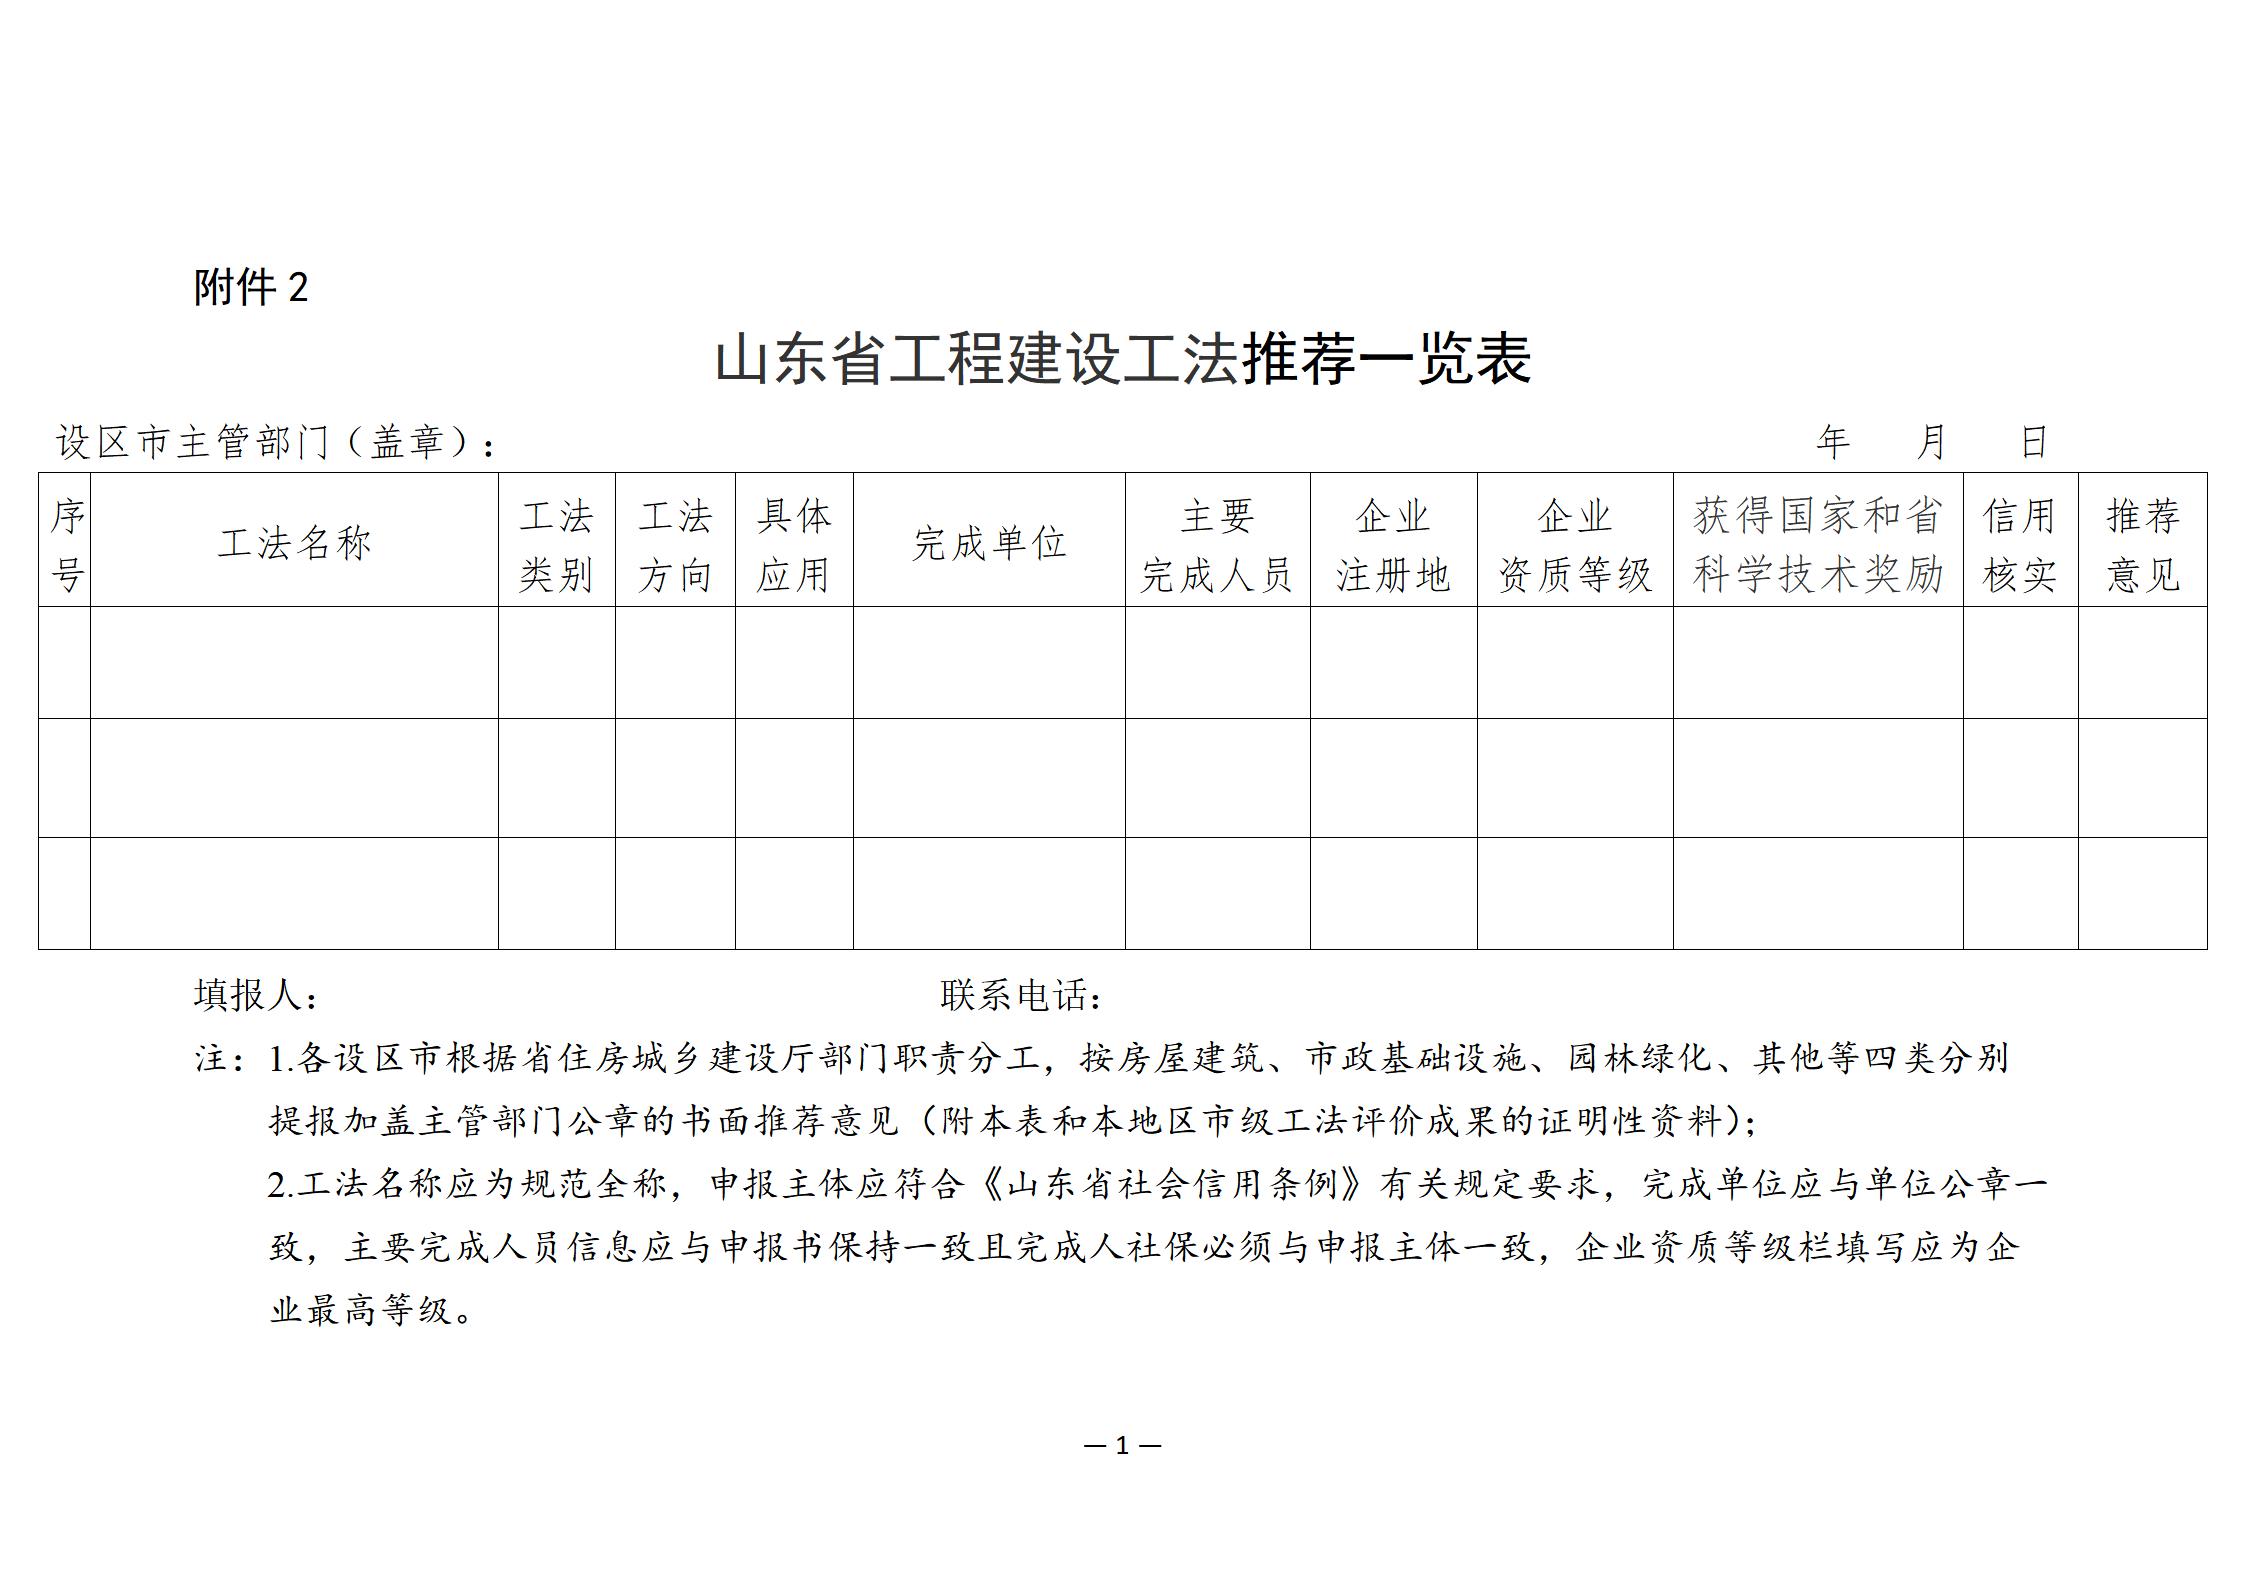 附件2：山东省工程建设工法推荐一览表_01.jpg